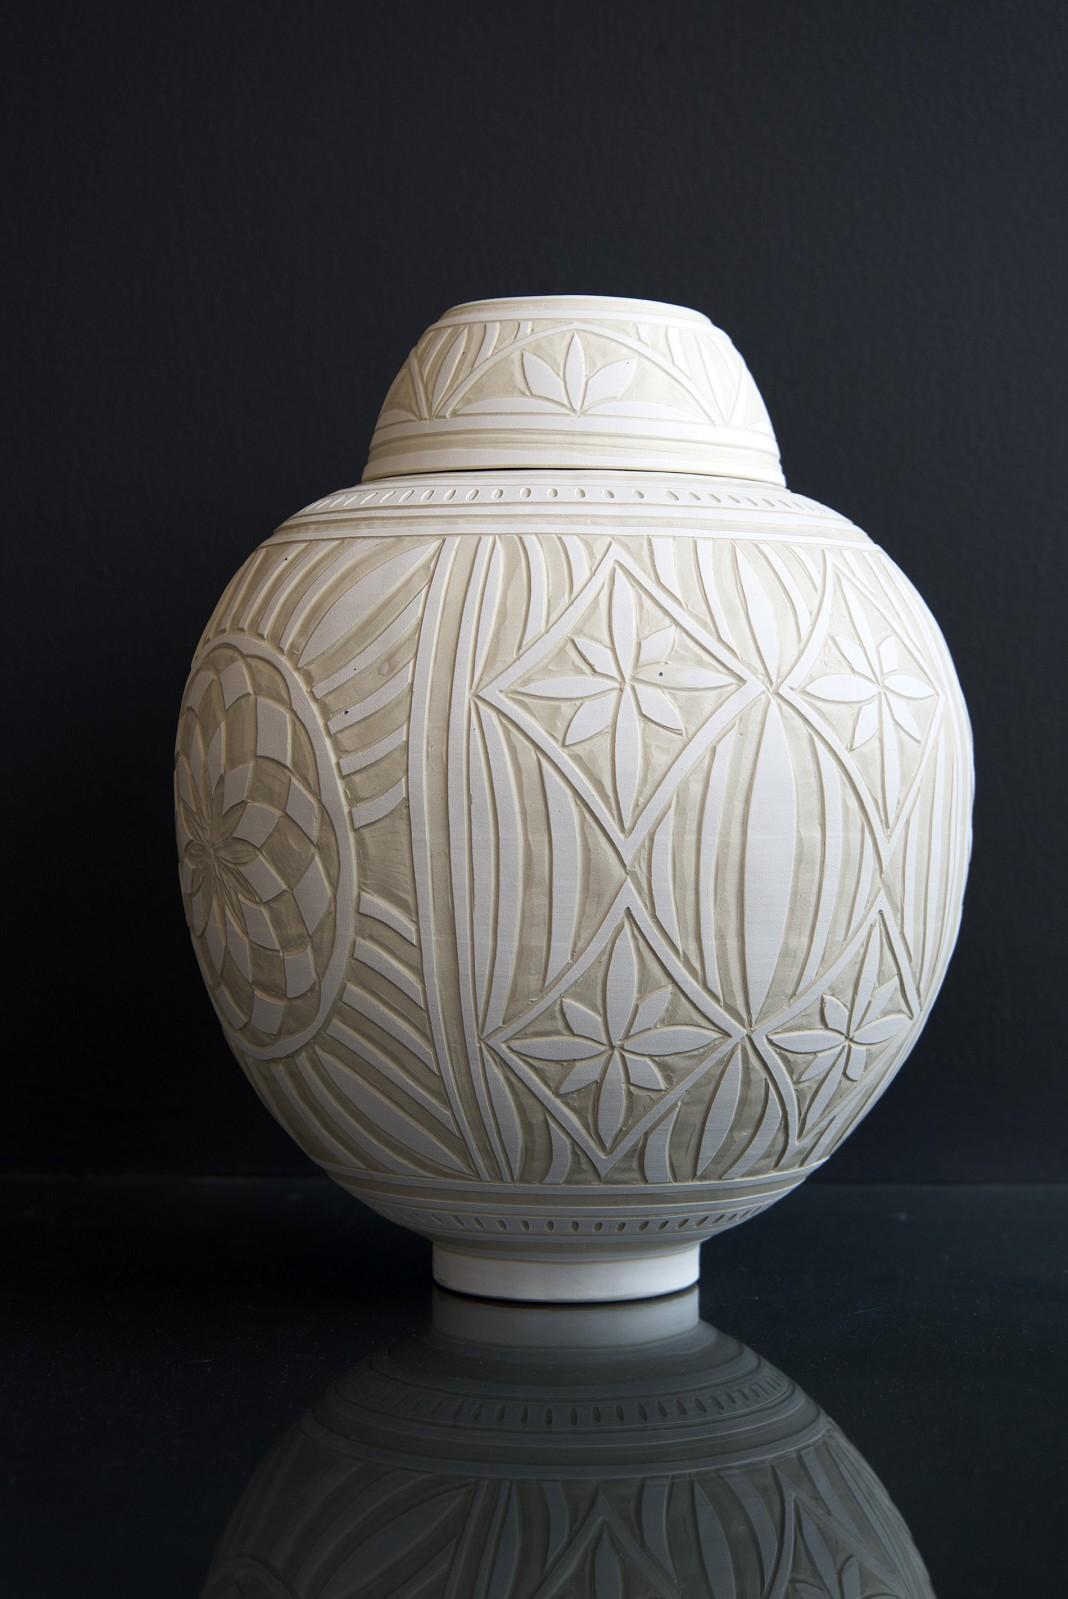 Medium Engraved Ginger Jar - decorative, detailed, handcrafted, porcelain vessel - Sculpture by Loren Kaplan